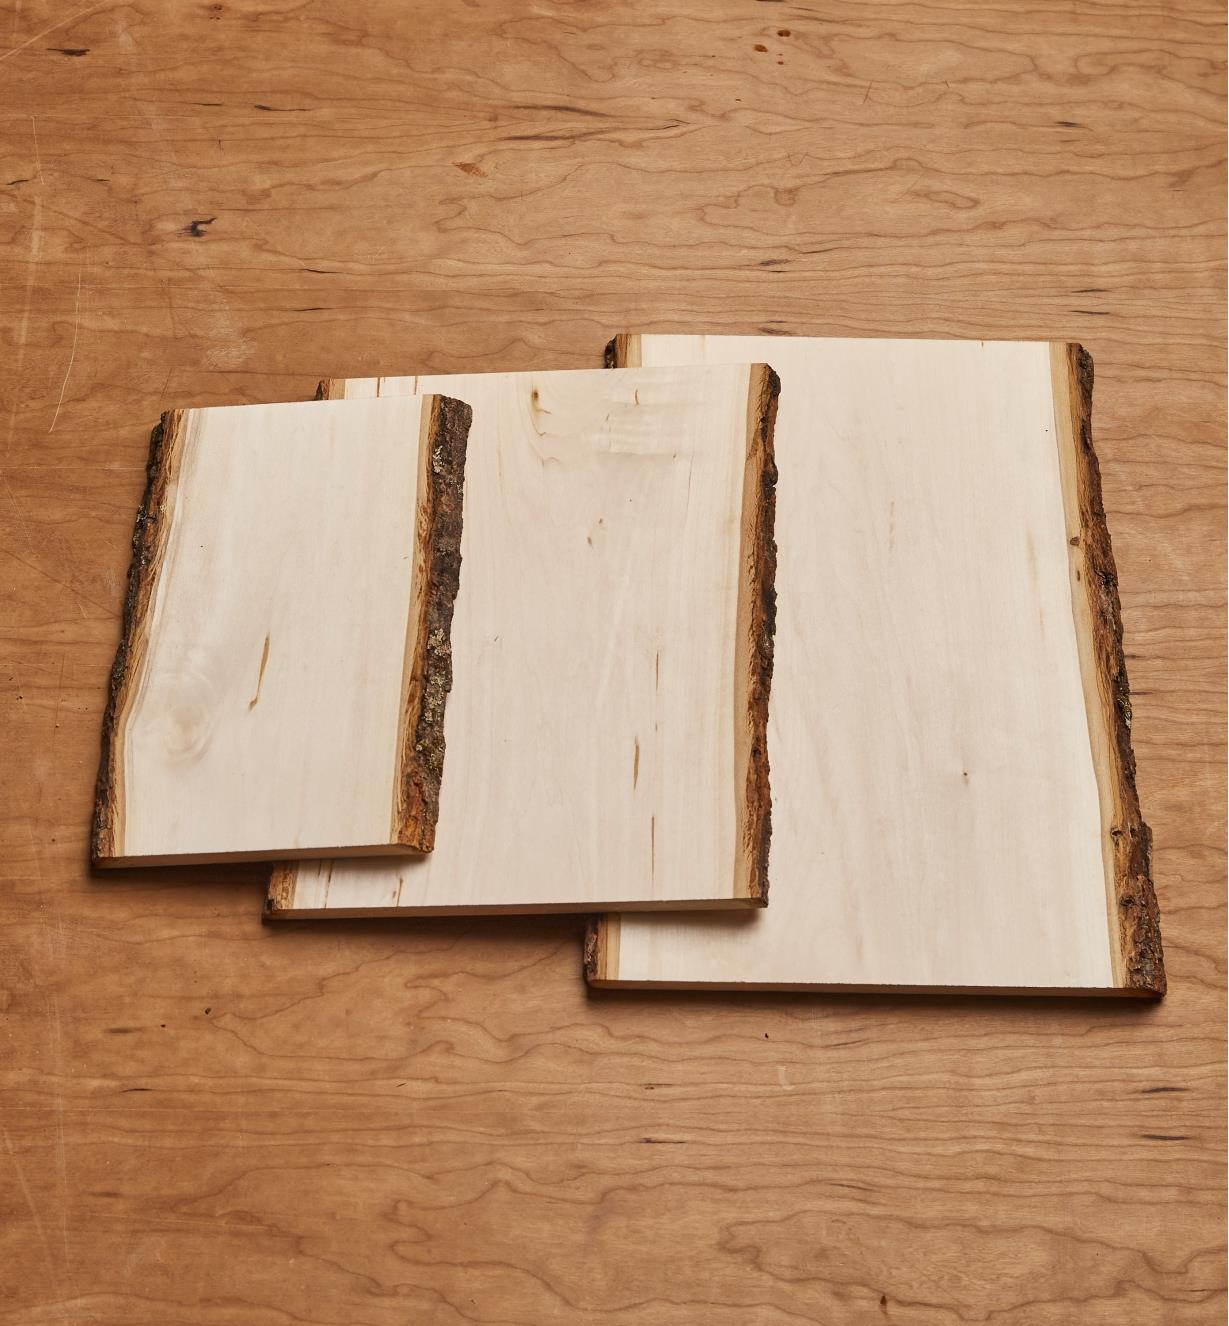 Les trois plaques rectangulaires en tilleul avec écorce de différents formats superposées pour comparer leurs dimensions